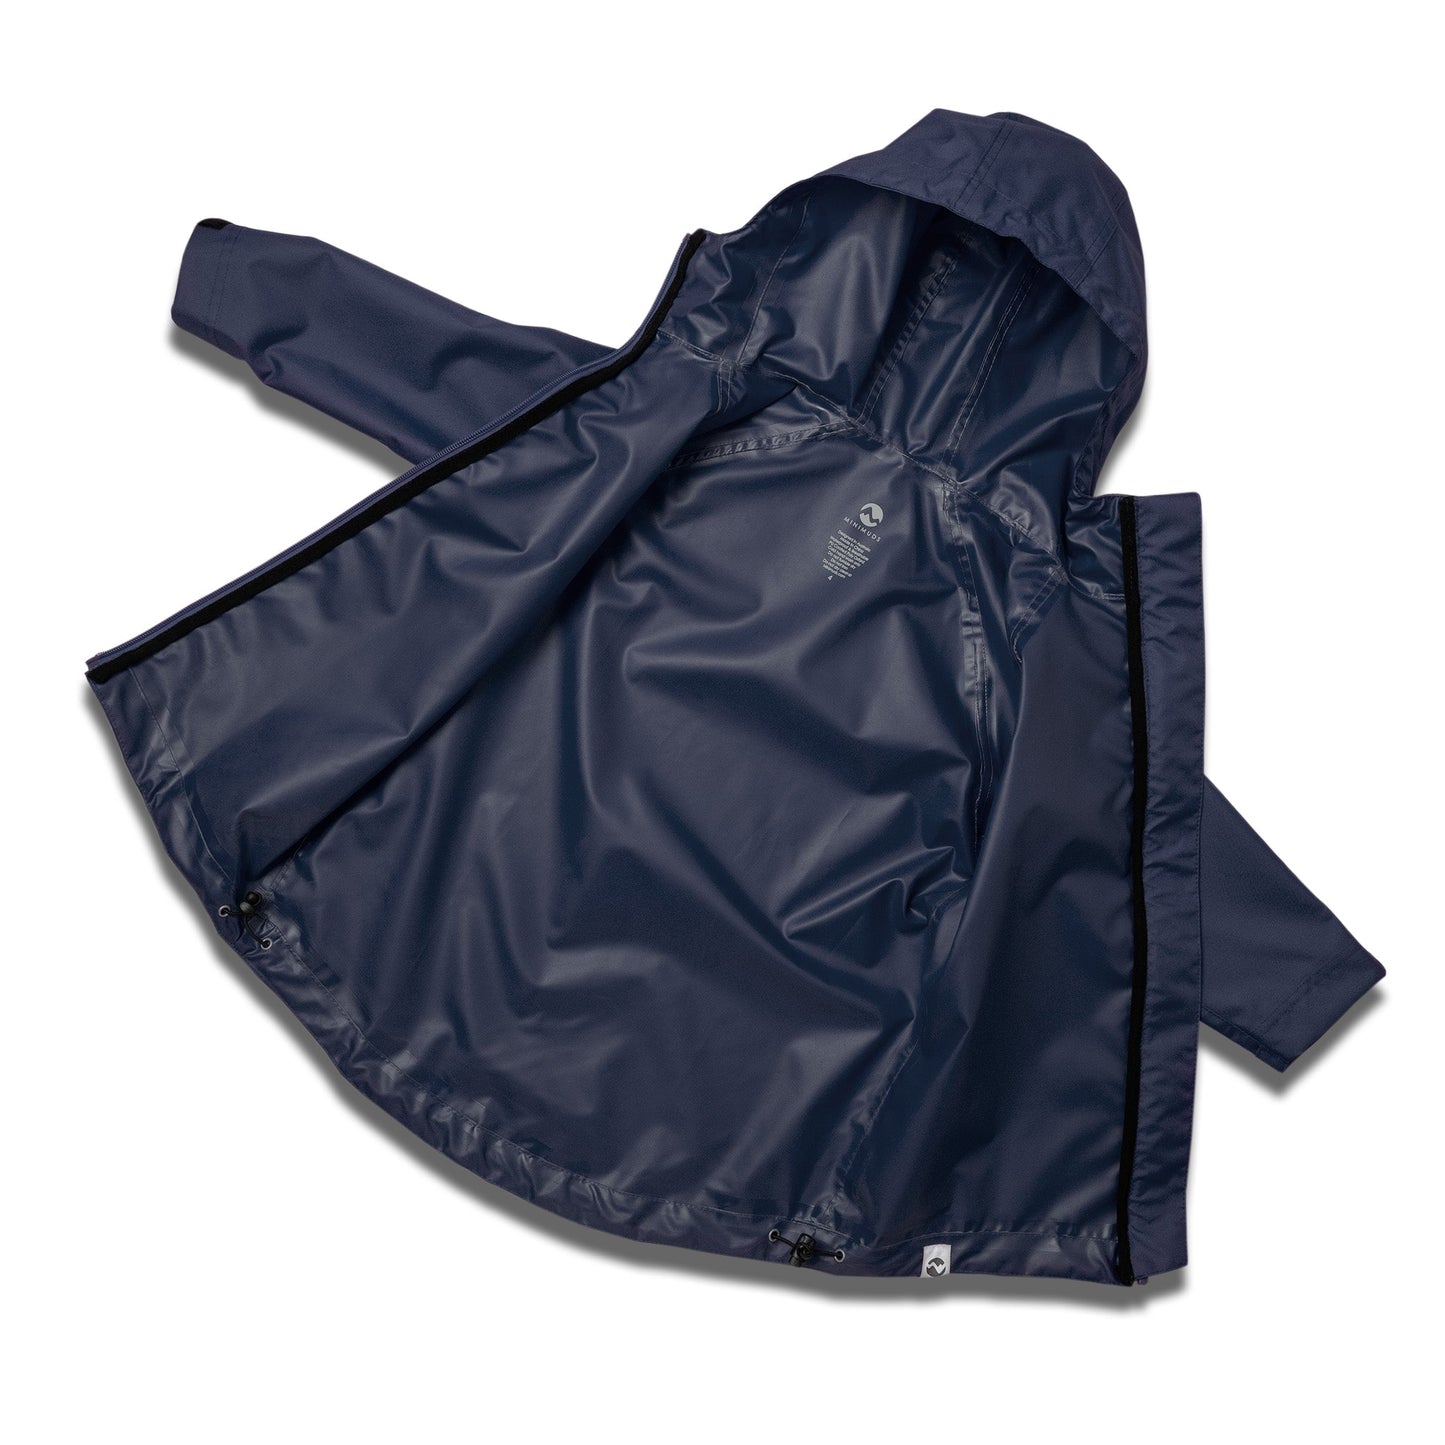 Overlander Waterproof Jacket